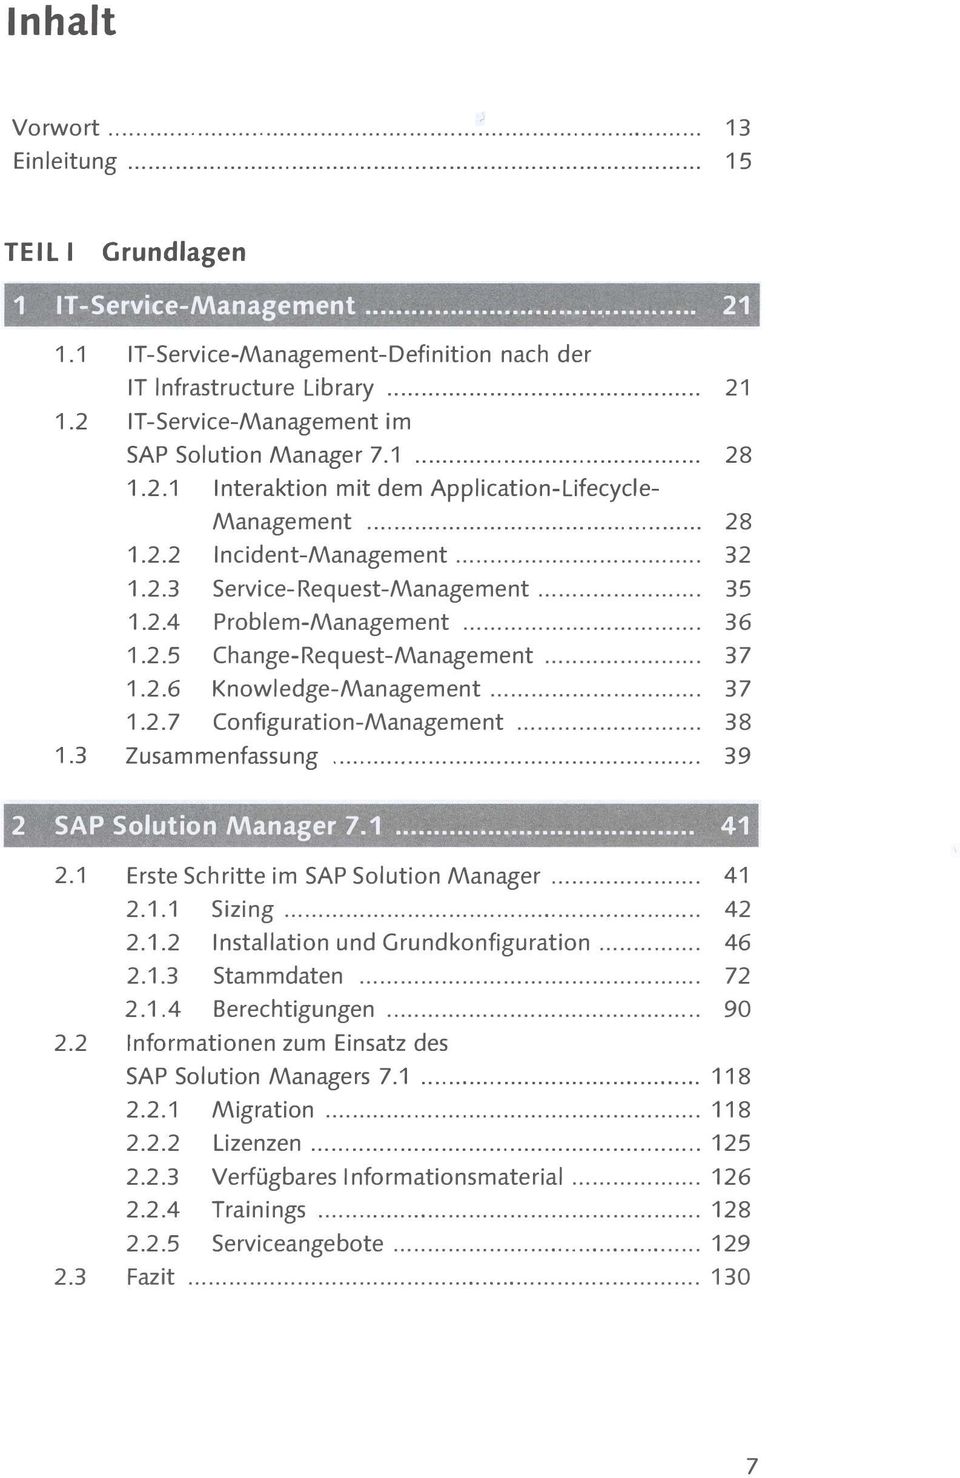 .. 37 1.2.6 Knowledge-Management... 37 1.2.7 Configuration-Management... 38 1.3 Zusammenfassung........... 39 2 SA P Solution Manager 7.1... 41 2.1 Erste Schritte im SAP Solution Manager... 41 2.1.1 Sizing.